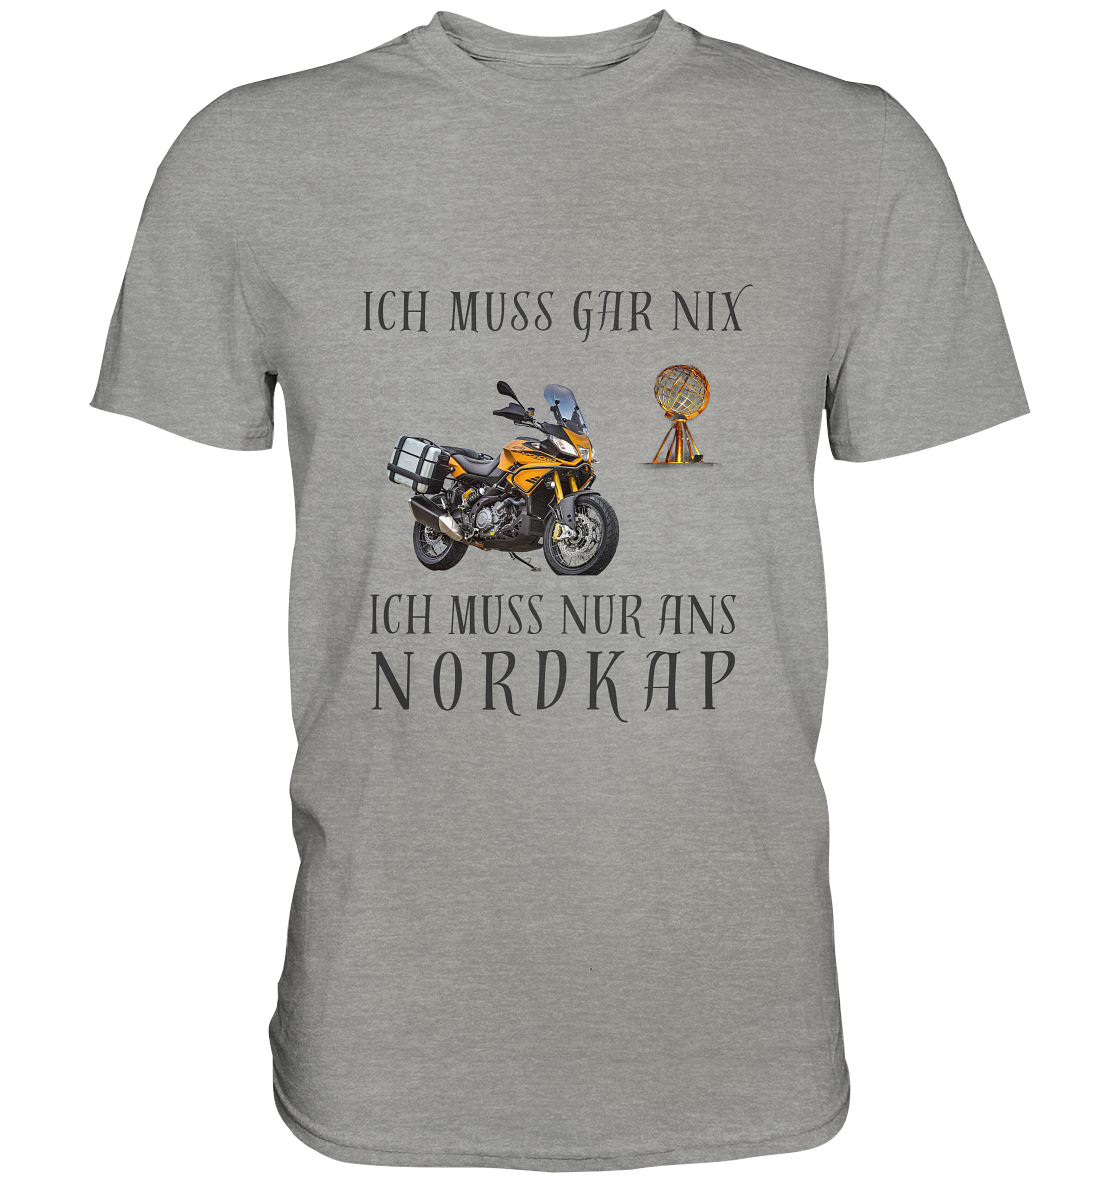 "Ich muss gar nix ..." _ Dirks Nordkap-Shirt mit dunklem Design